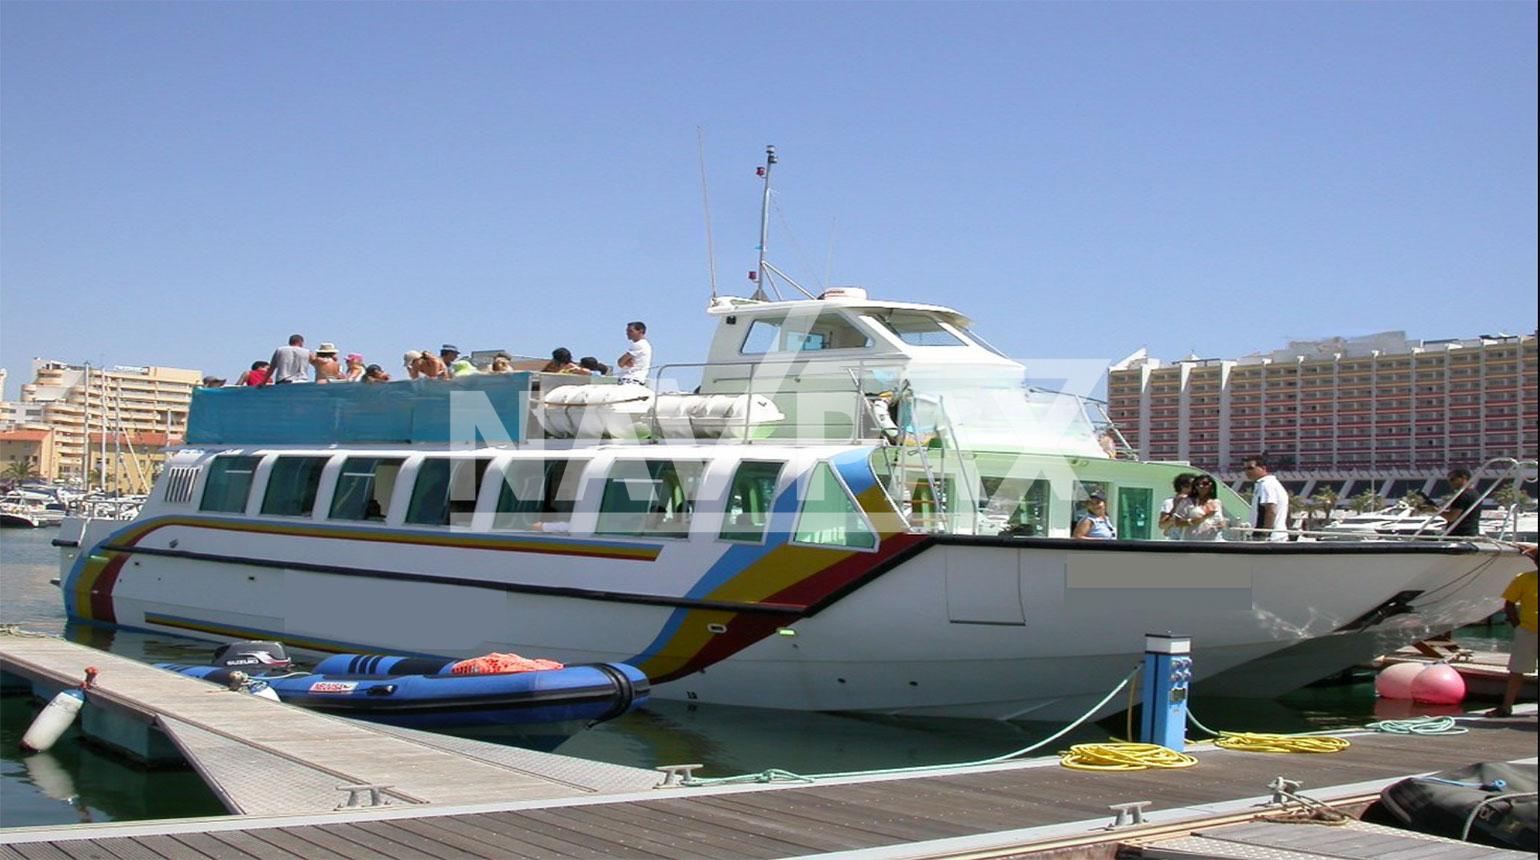 Barcos de pasajeros en venta, ocasión y segunda mano